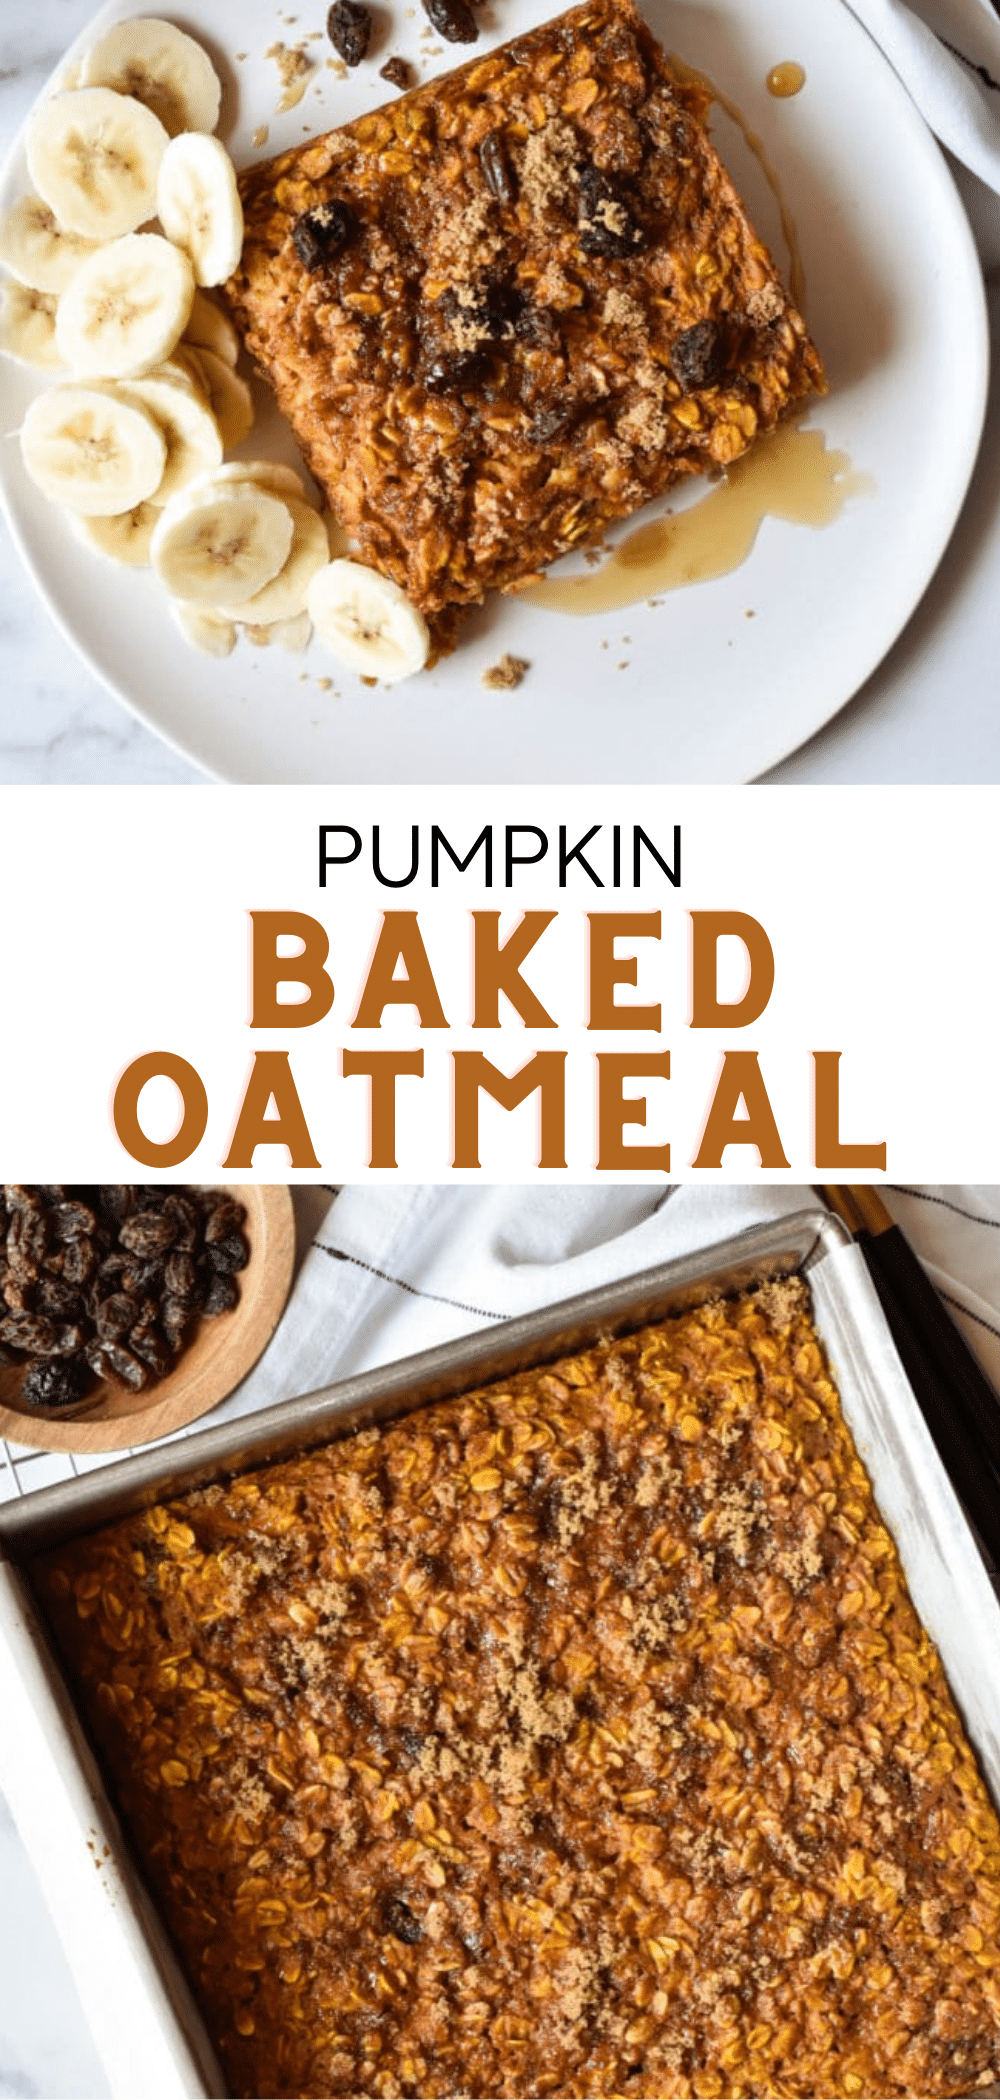 Healthy Baked Oatmeal (Pumpkin!) • Kath Eats